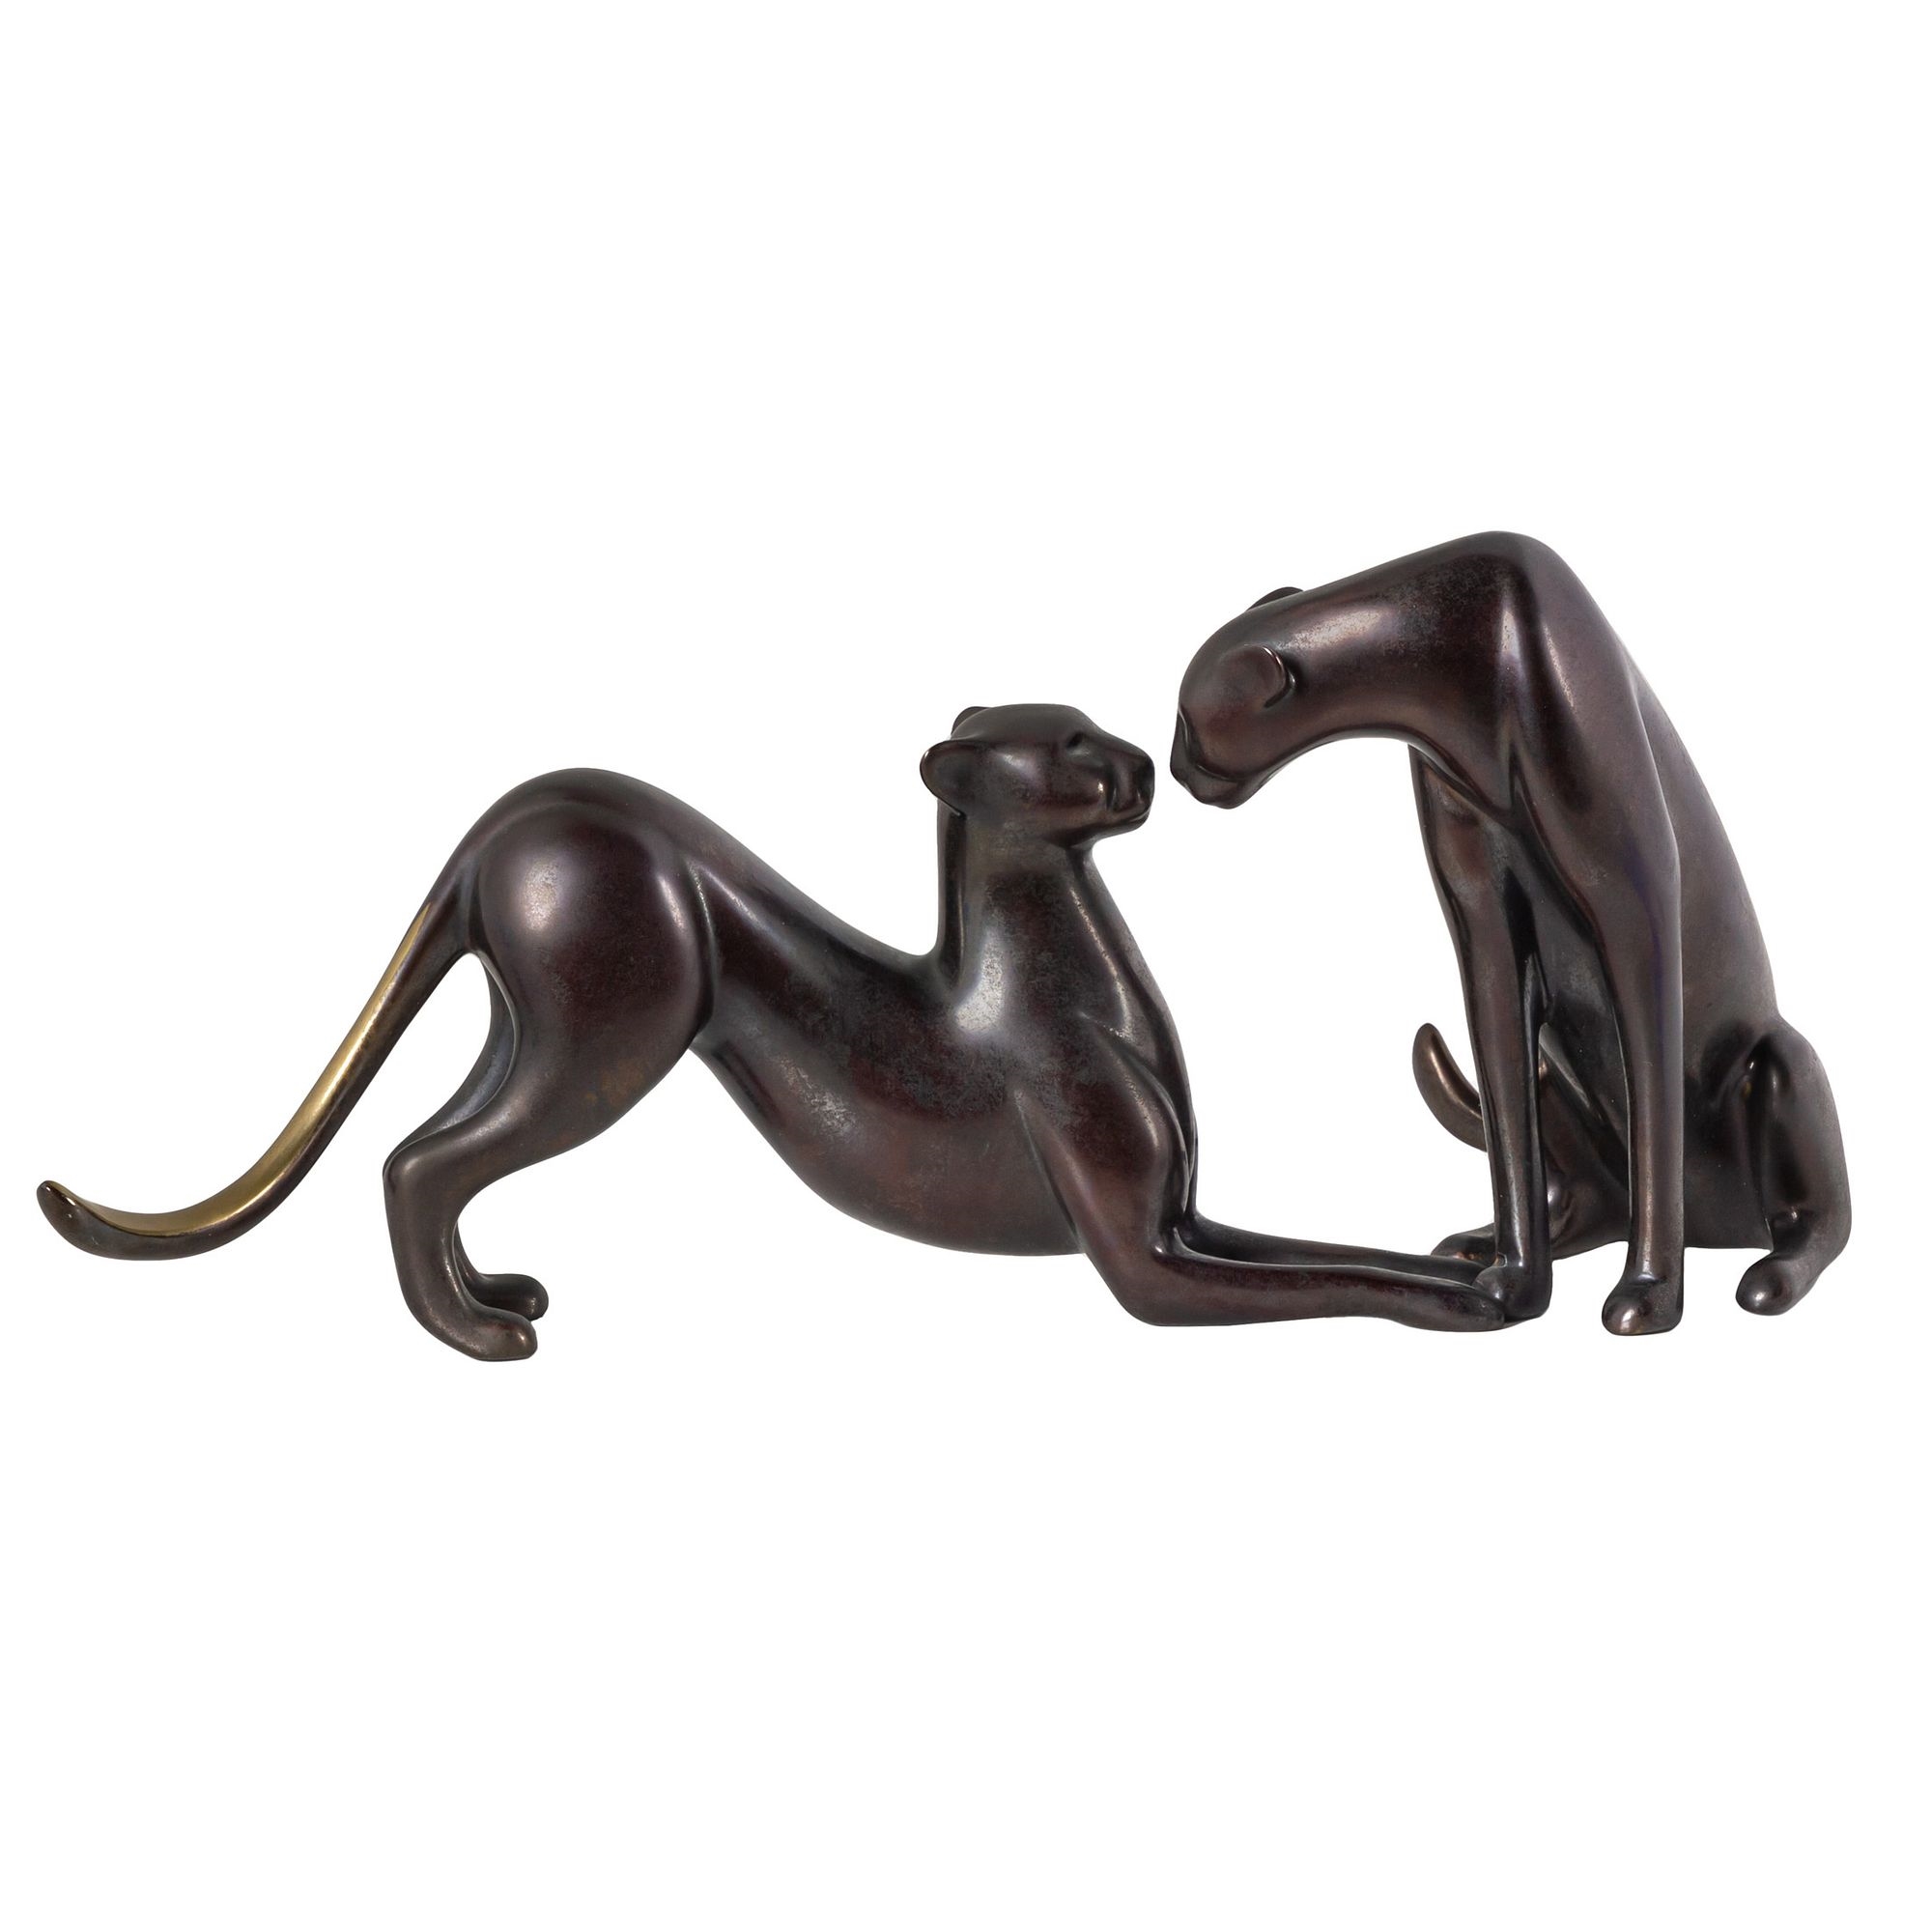 Loet Vanderveen Bronze Art Sculpture Running Cheetah Figurine